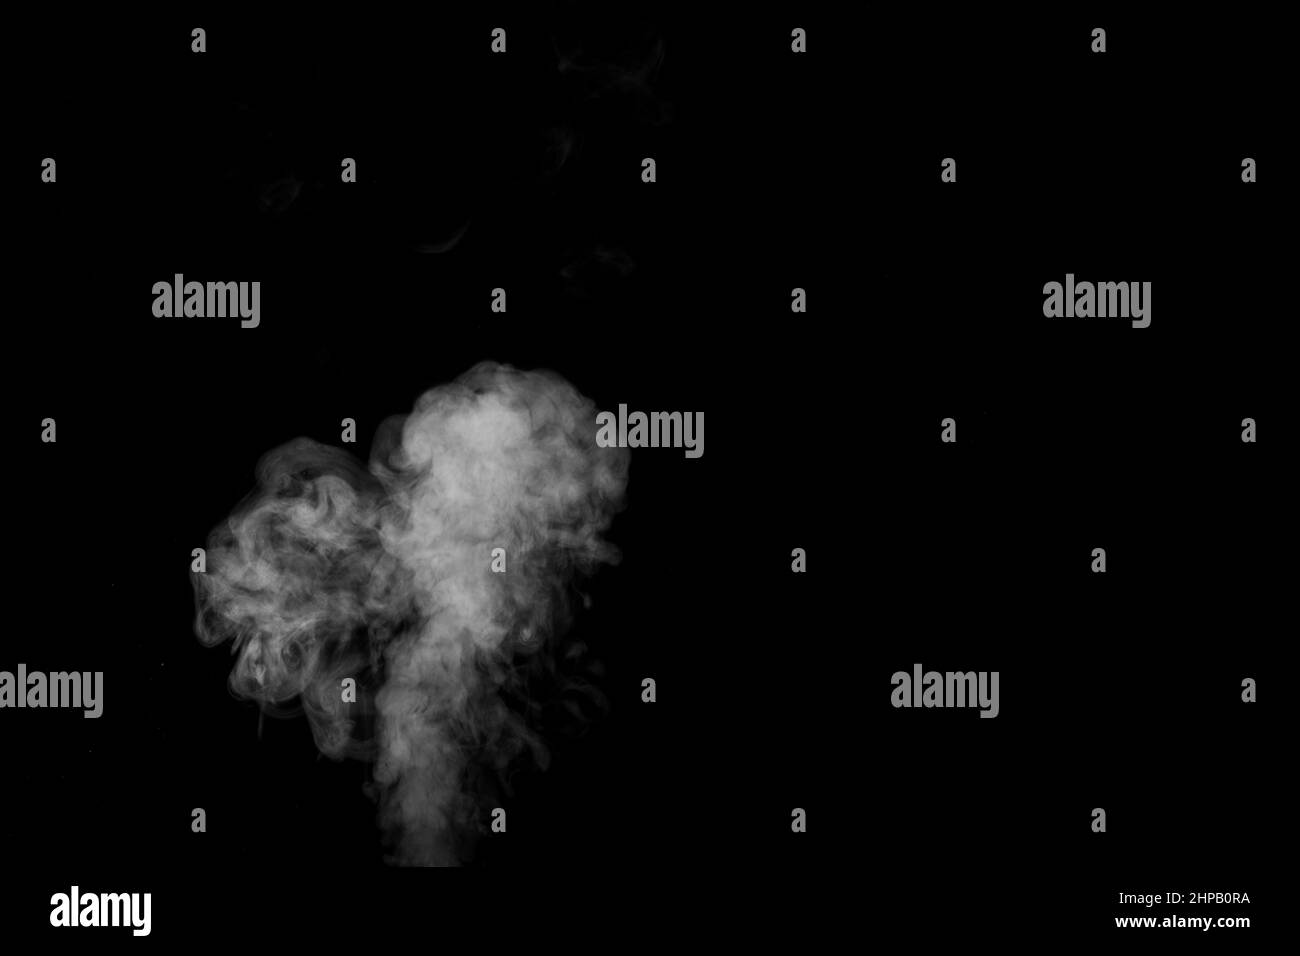 Wirbelnder, kreischender Rauch, herzförmiger Dampf, isoliert auf schwarzem Hintergrund, um Ihre Fotos zu überlagern. Romantisches Paar. Liebe den Duft. Zusammenfassung Stockfoto